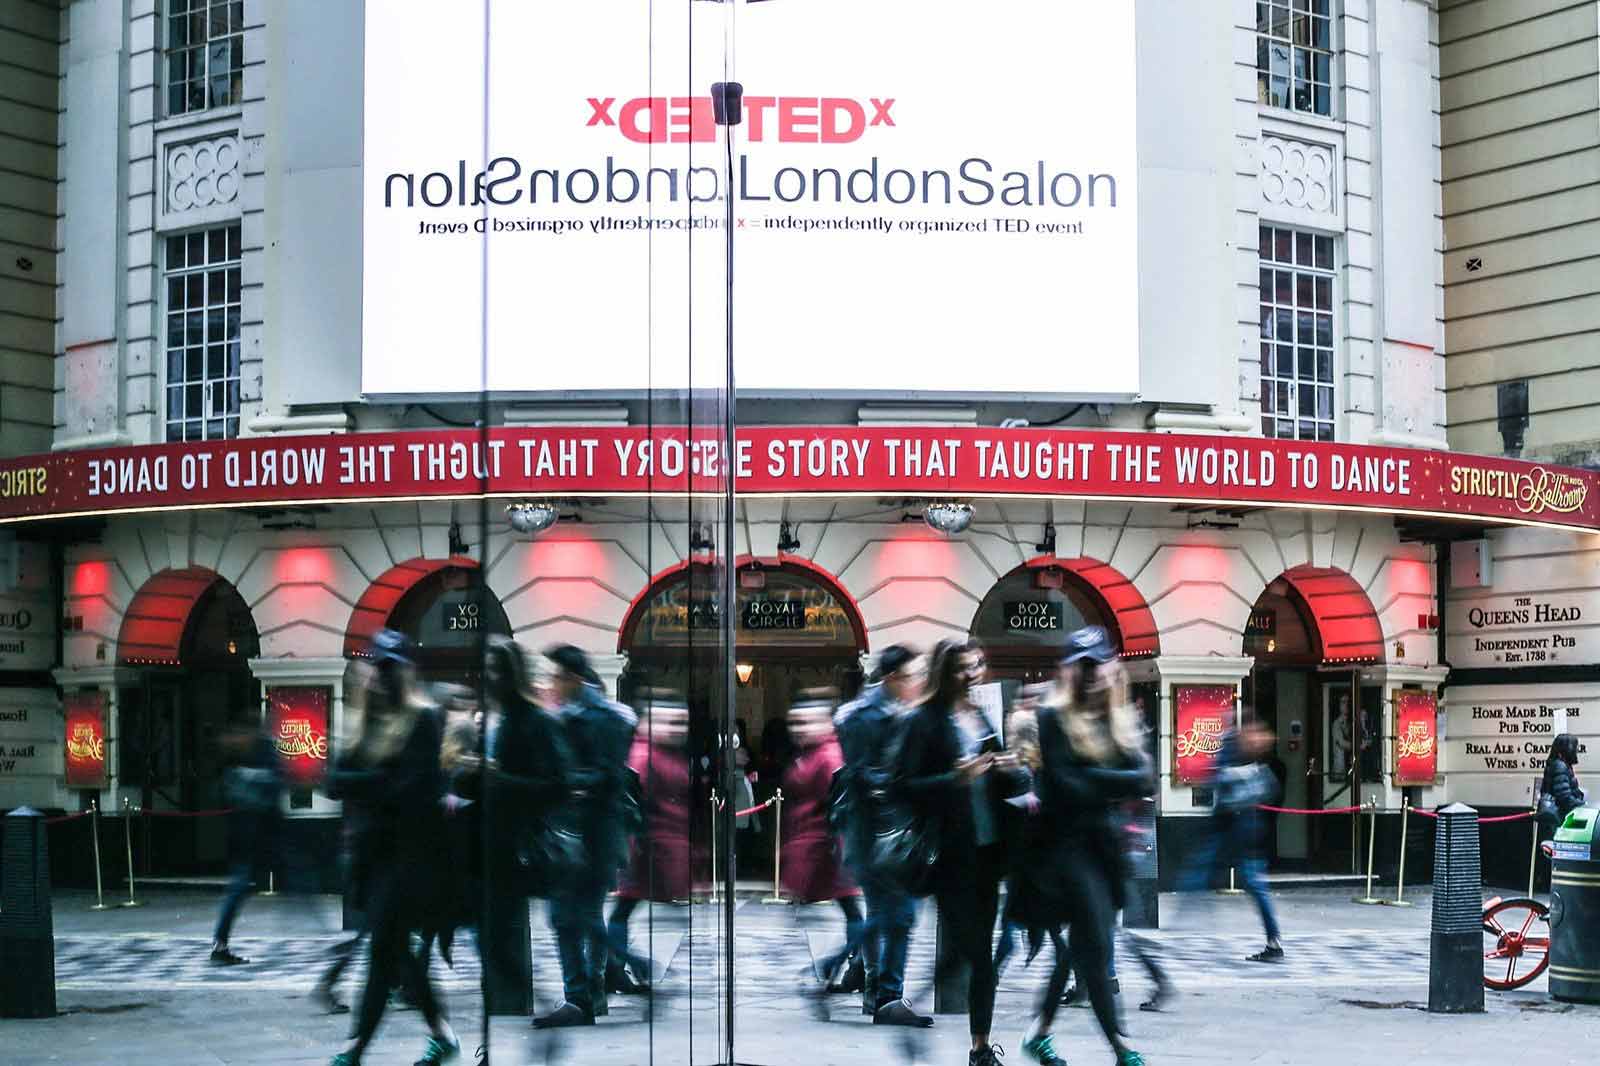 TEDx billboard in London